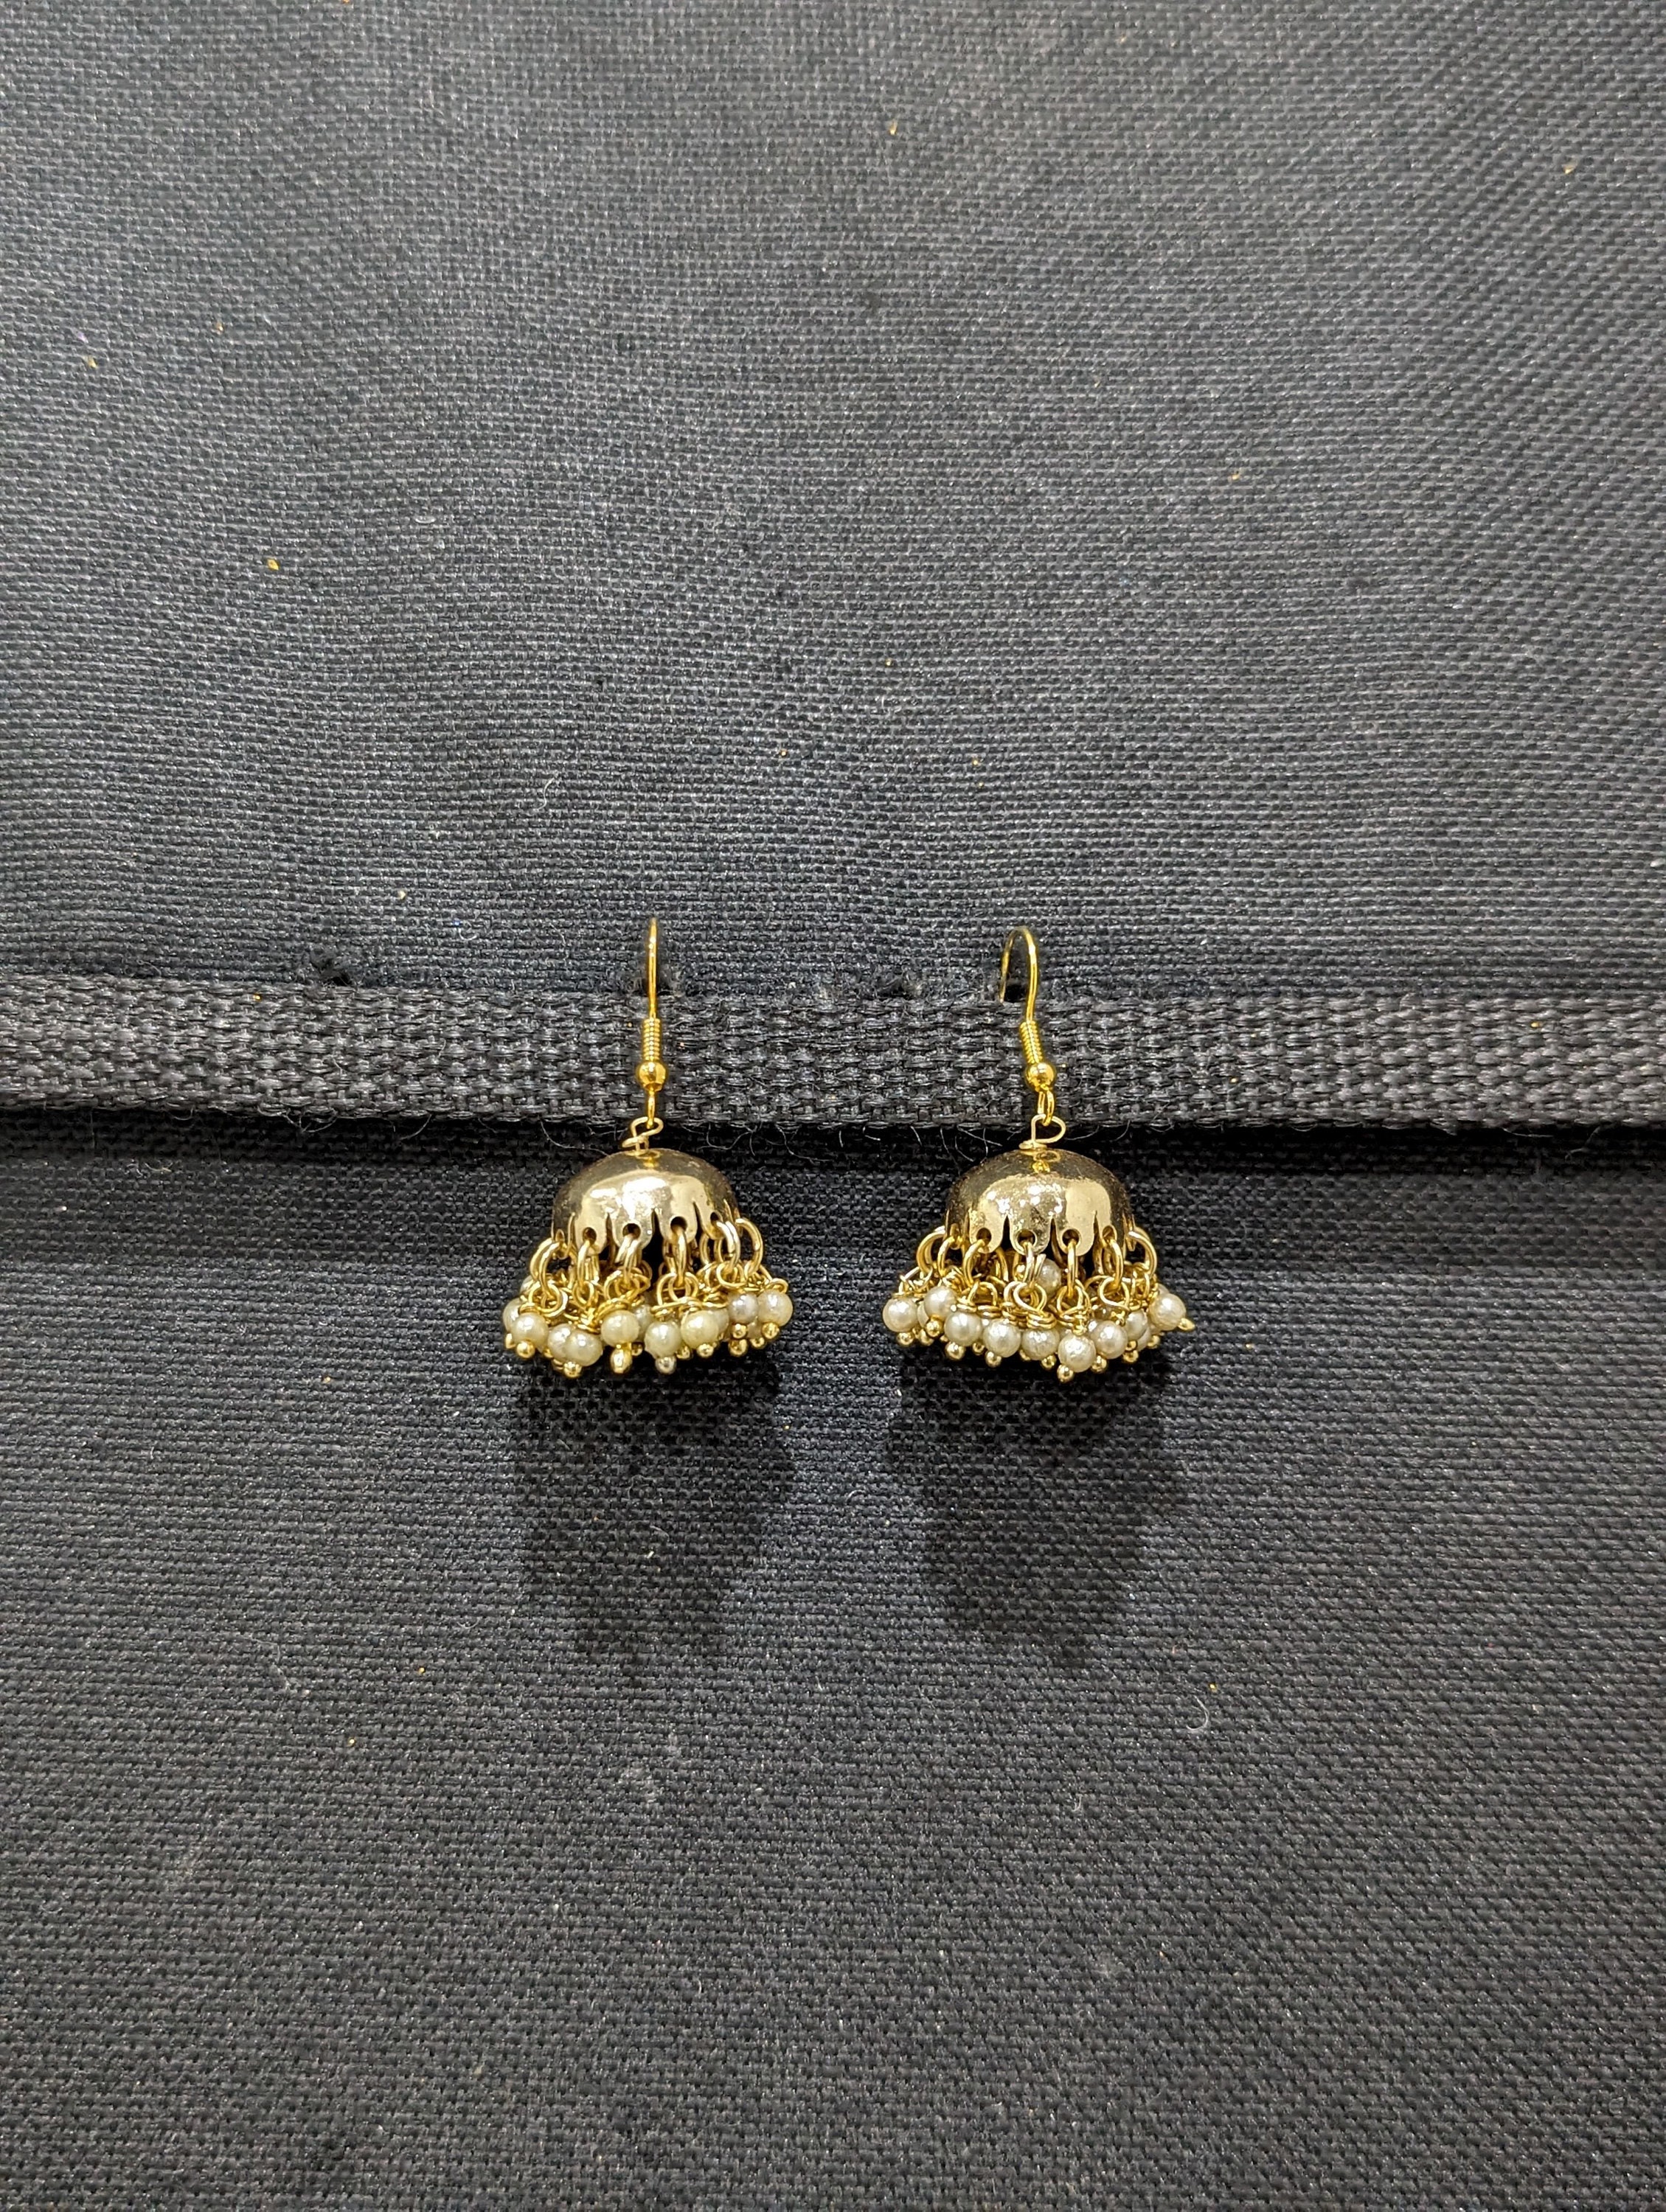 22k Yellow Gold Beaded Patterned Jhumka Earrings - ER-1403-sgquangbinhtourist.com.vn